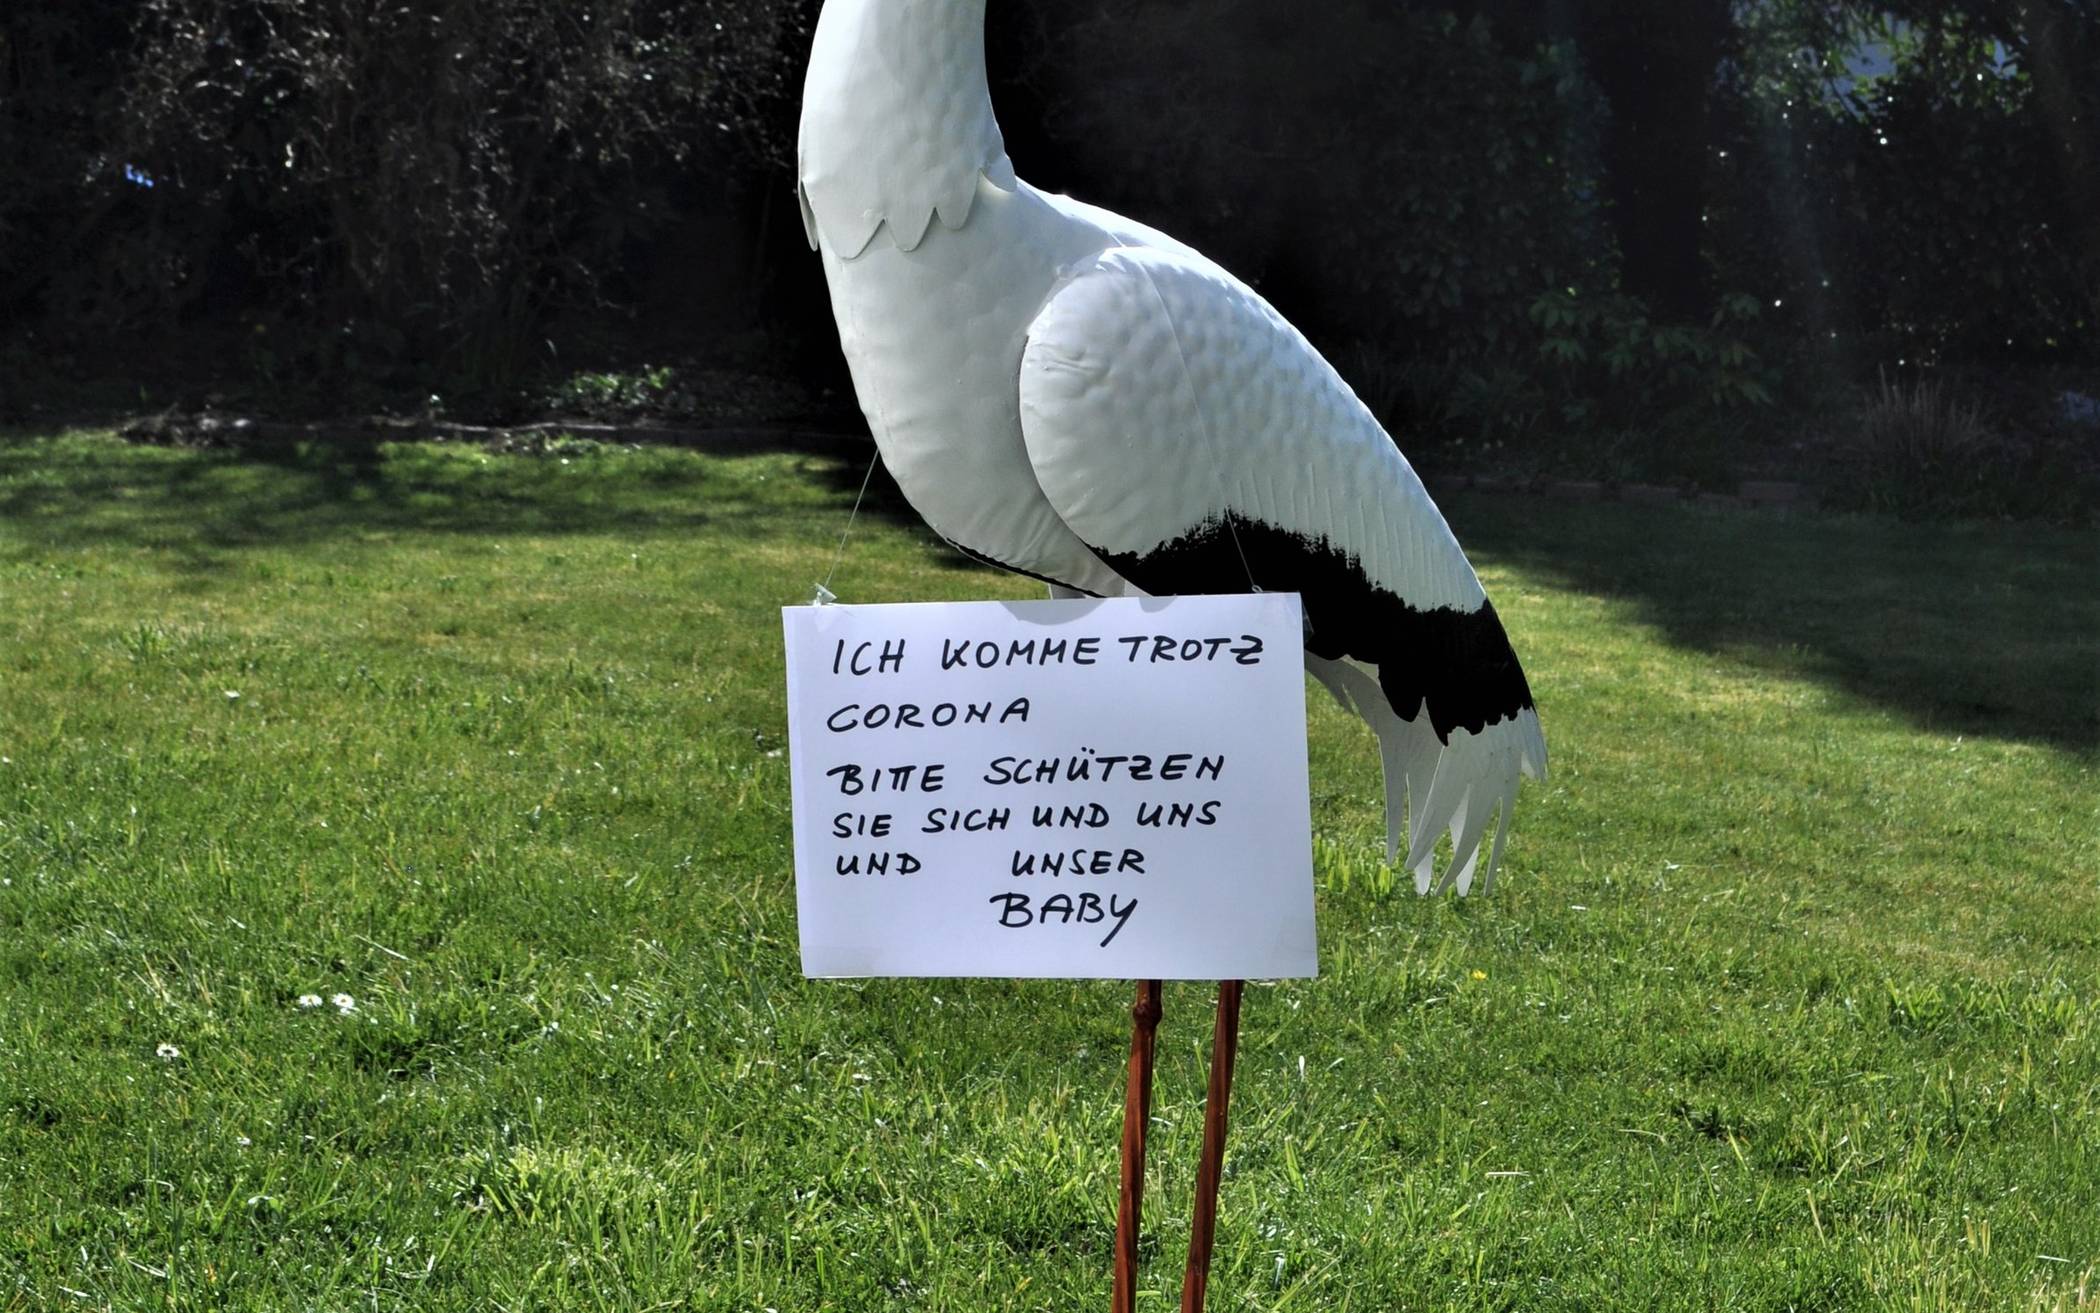  Karola Krämer schickt einen Storch mit Botschaft, um den Ärzten und Hebammen zu danken, die in der Corona-Krise ihr Enkelkind auf die Welt gebracht haben.  